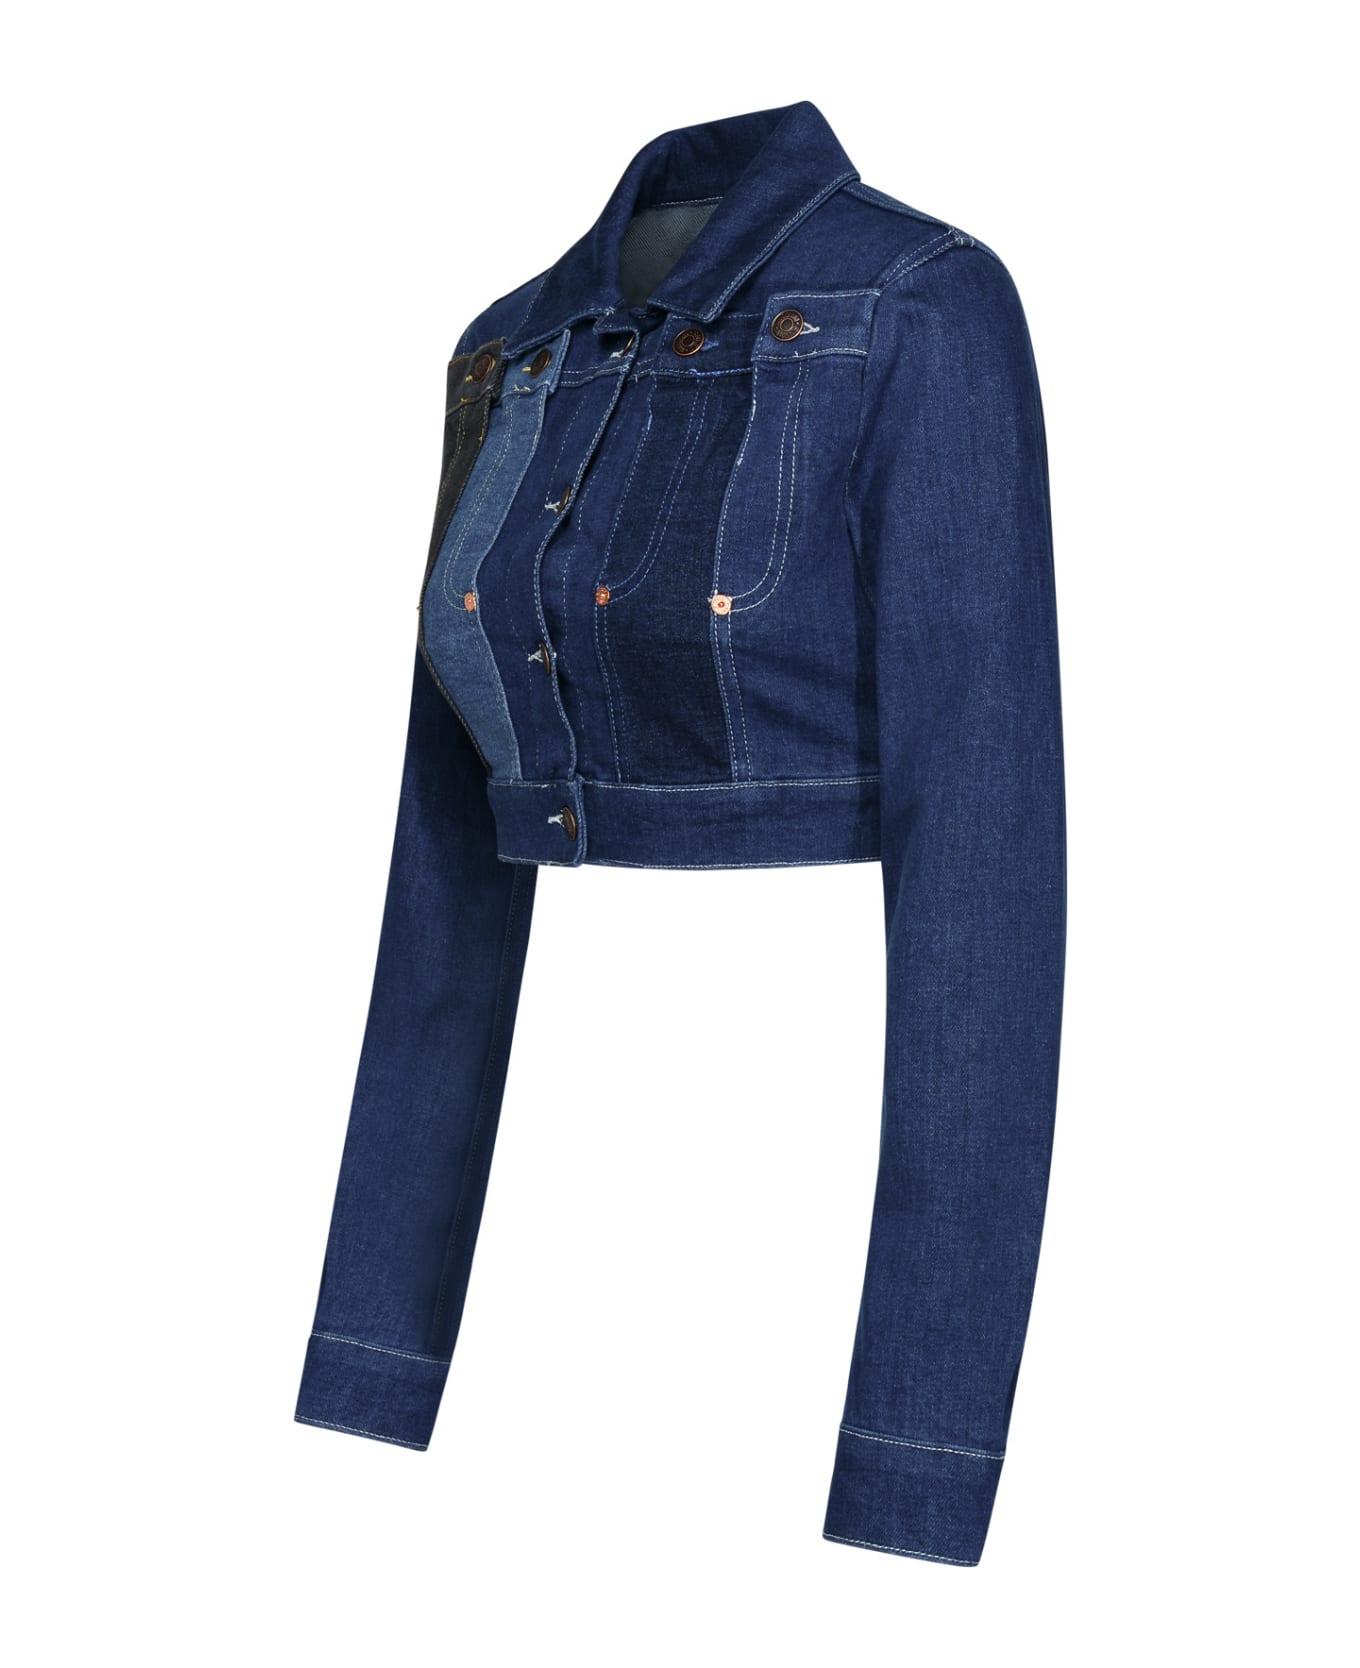 M05CH1N0 Jeans Blue Cotton Jacket - Denim